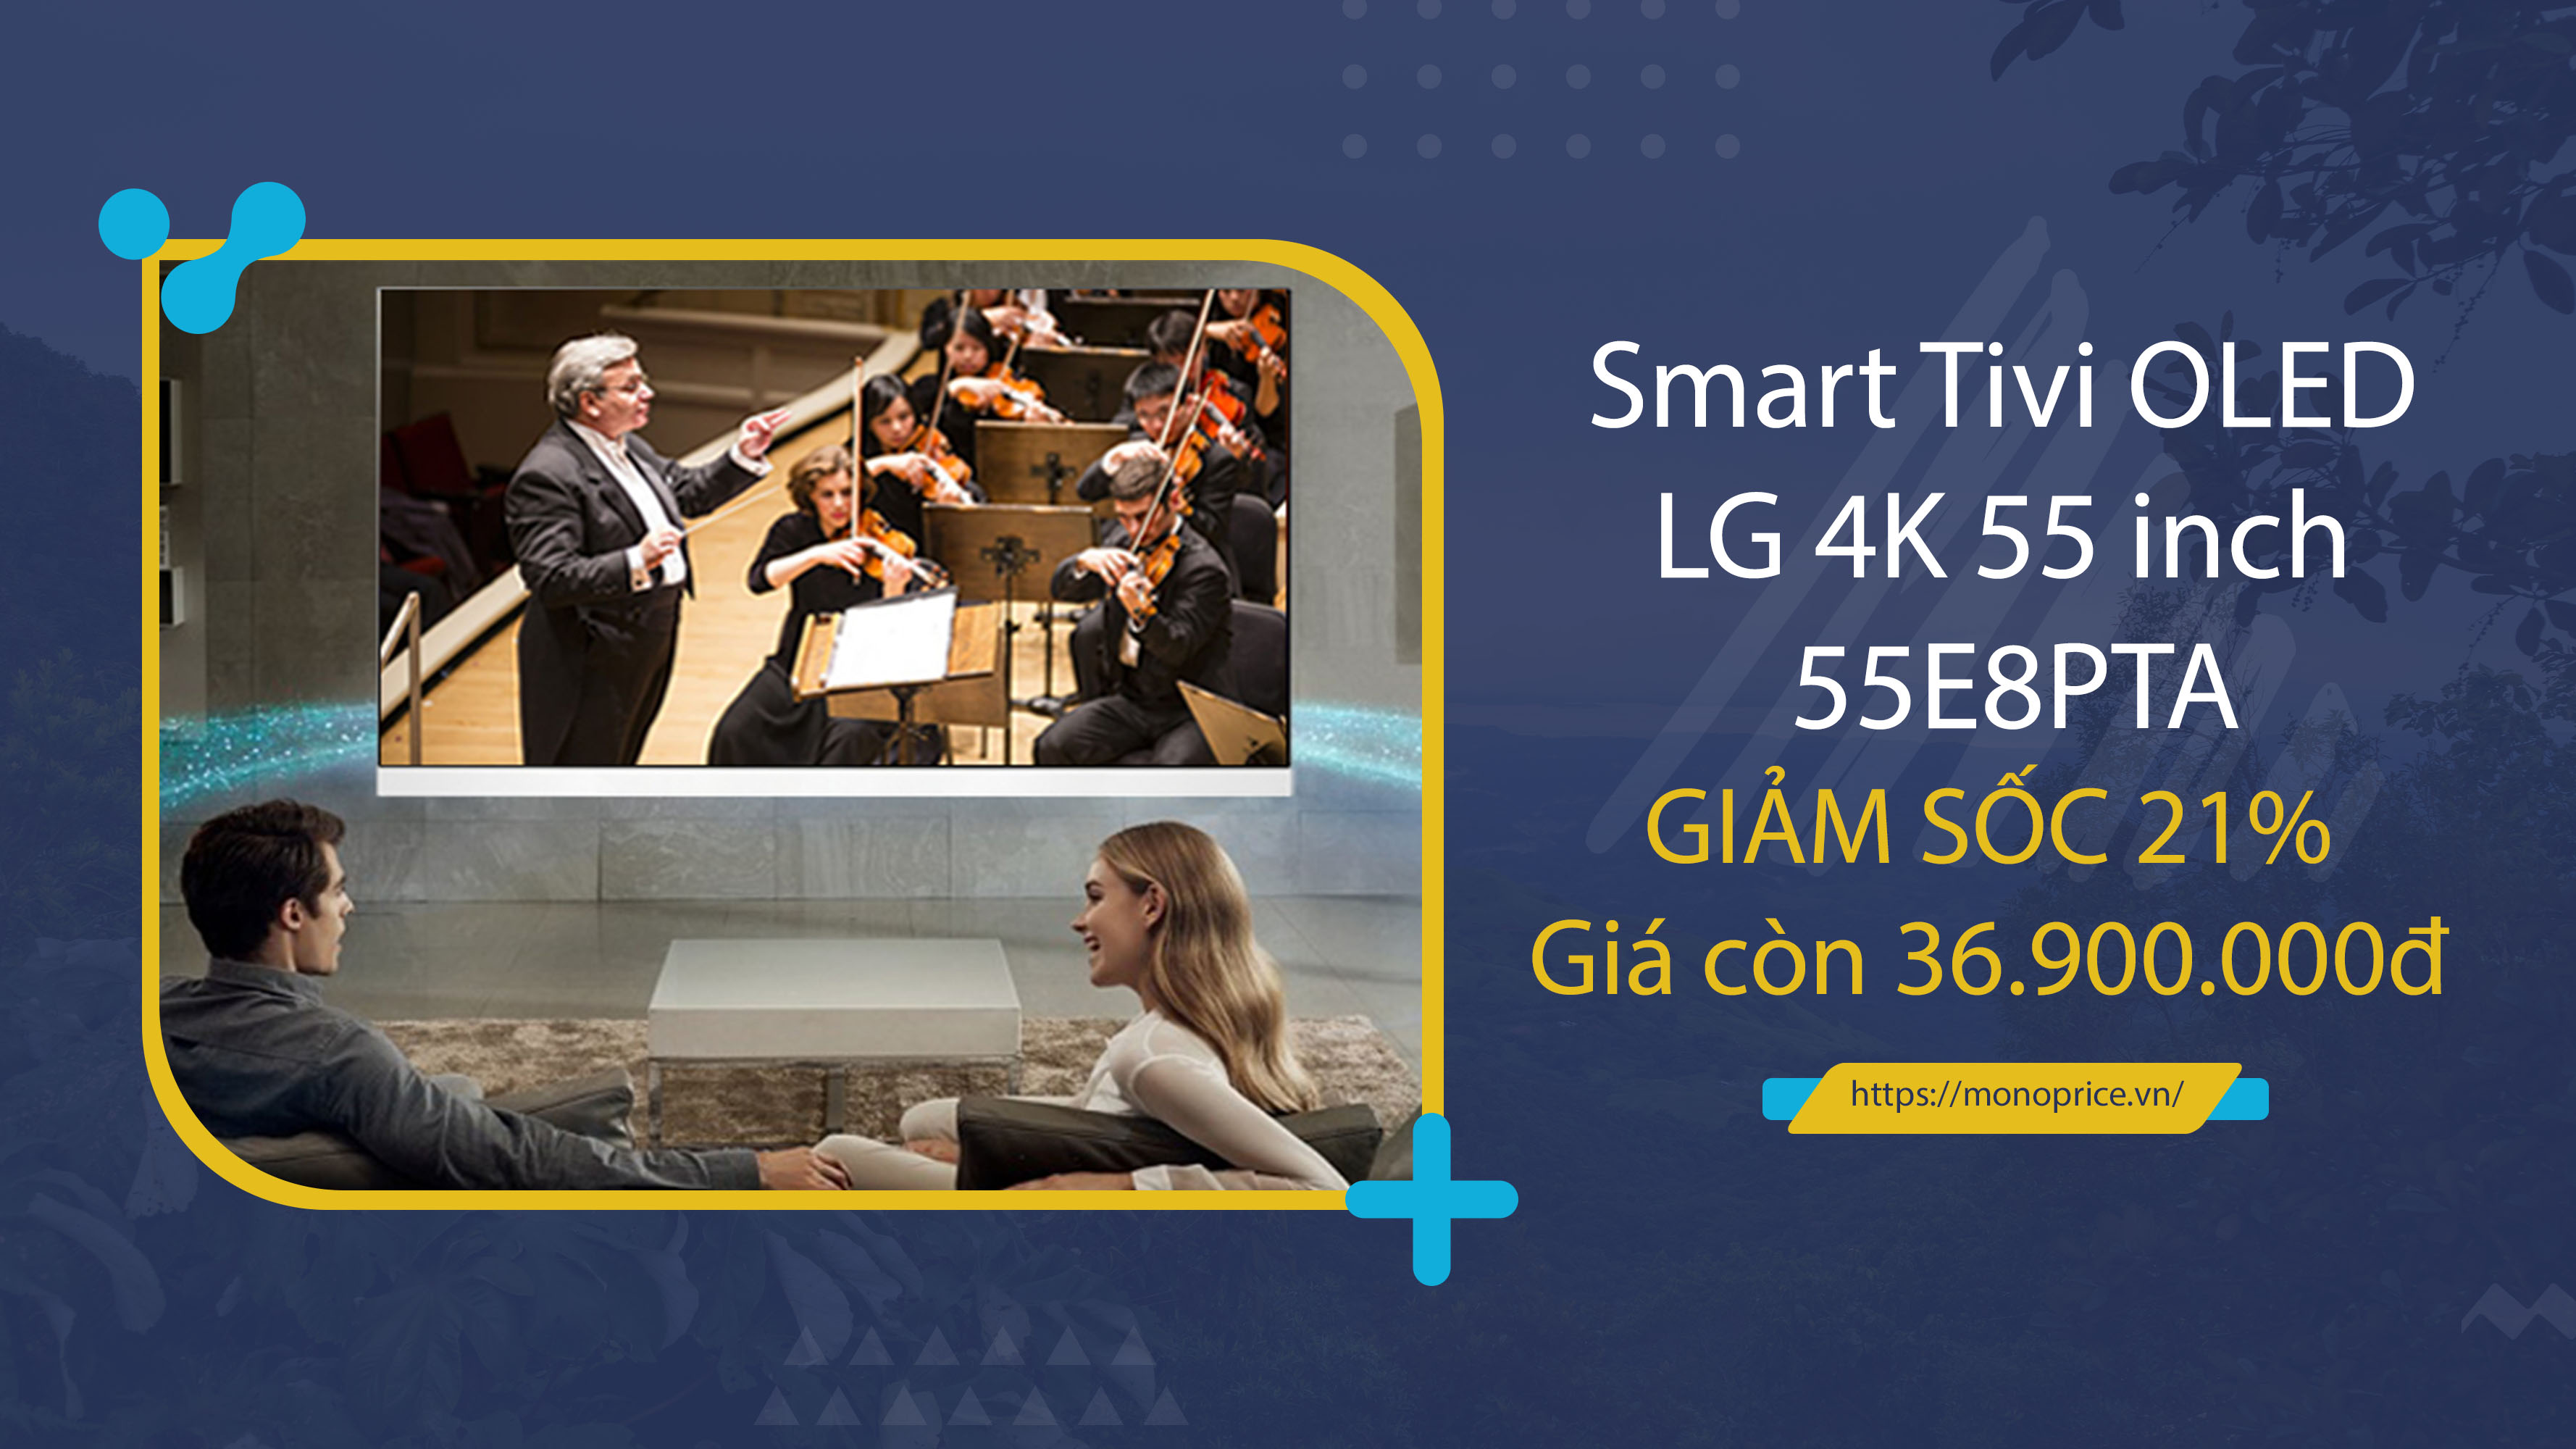 Siêu khuyến mãi Smart Tivi OLED LG 55E8PTA